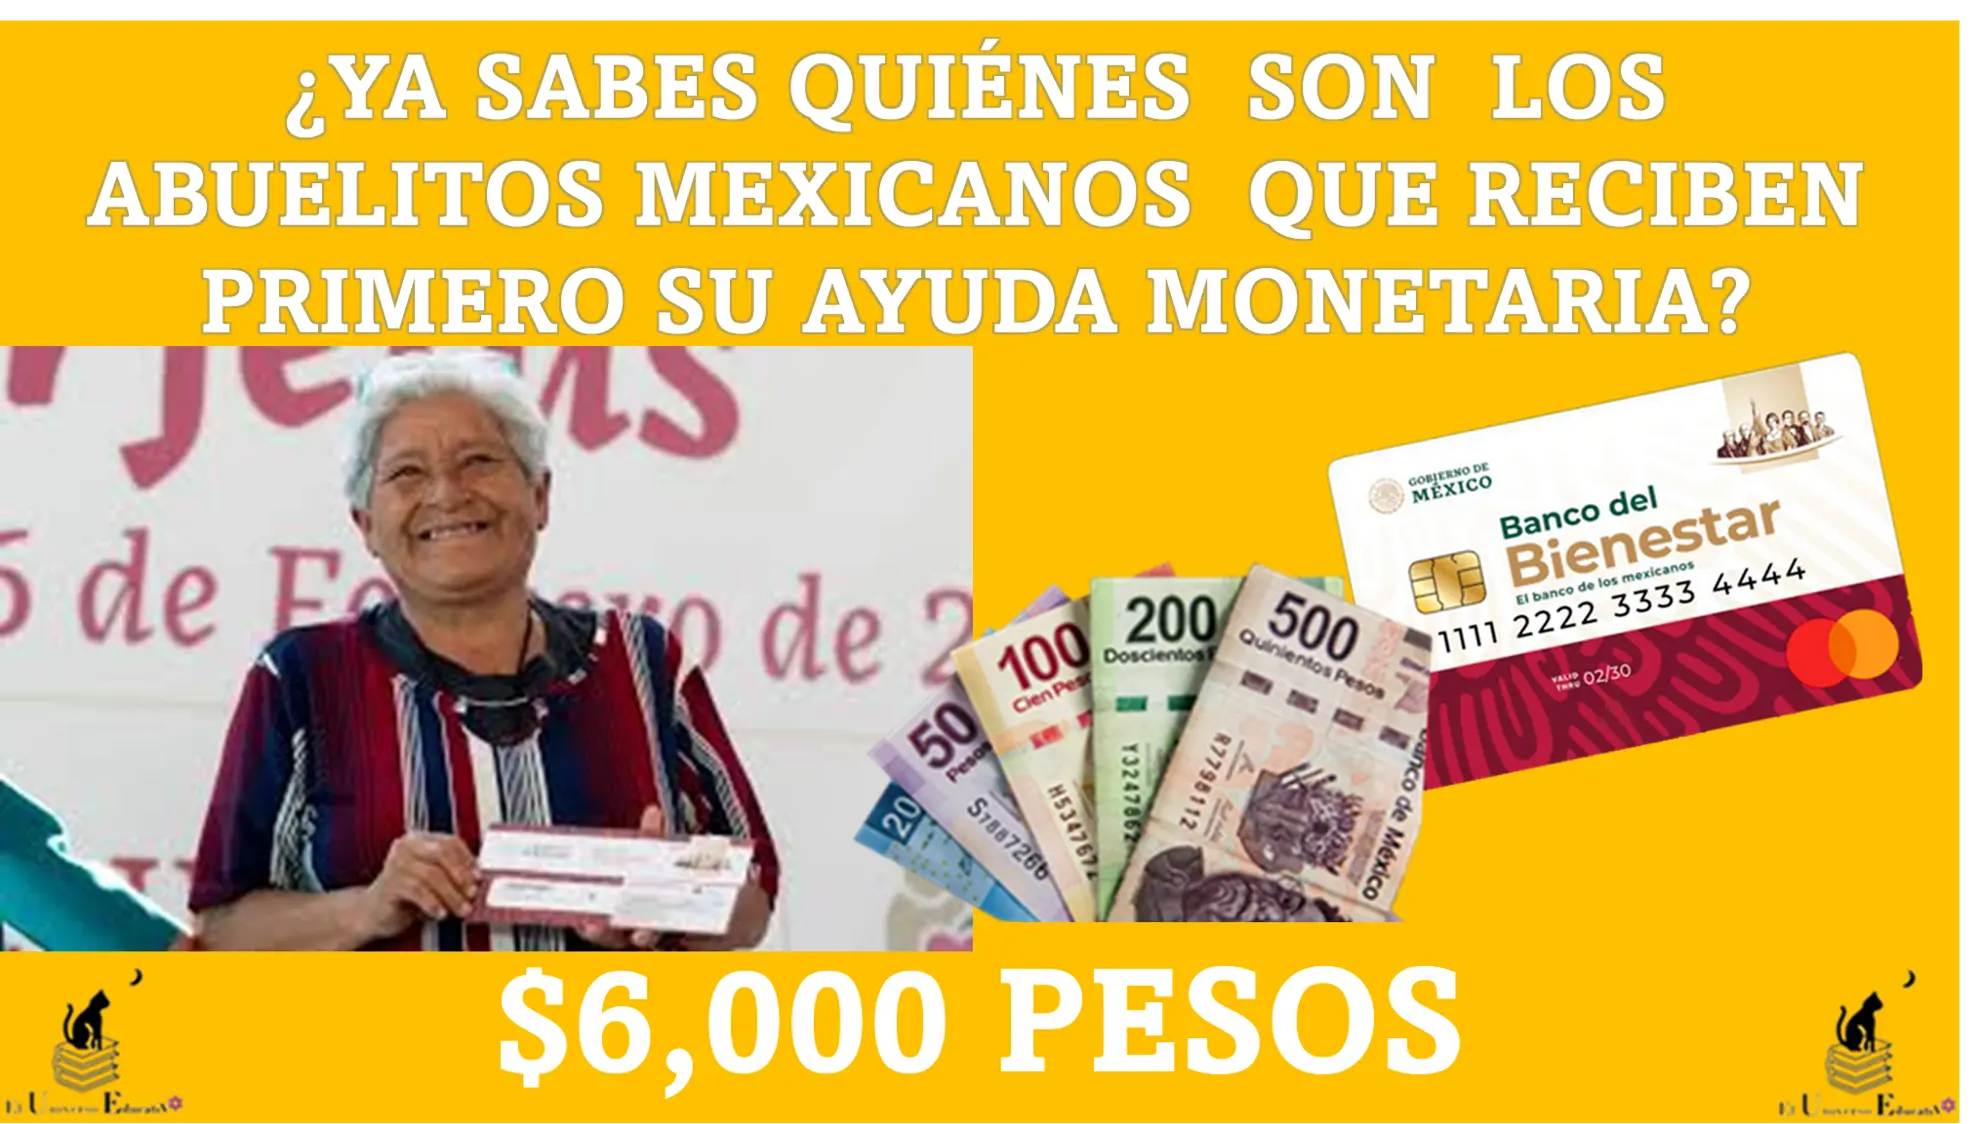 ¿YA SABES QUIÉNES SON LOS ABUELITOS MEXICANOS QUE RECIBEN PRIMERO SU AYUDA DE $6,000 PESOS? ENTÉRATE AQUÍ 